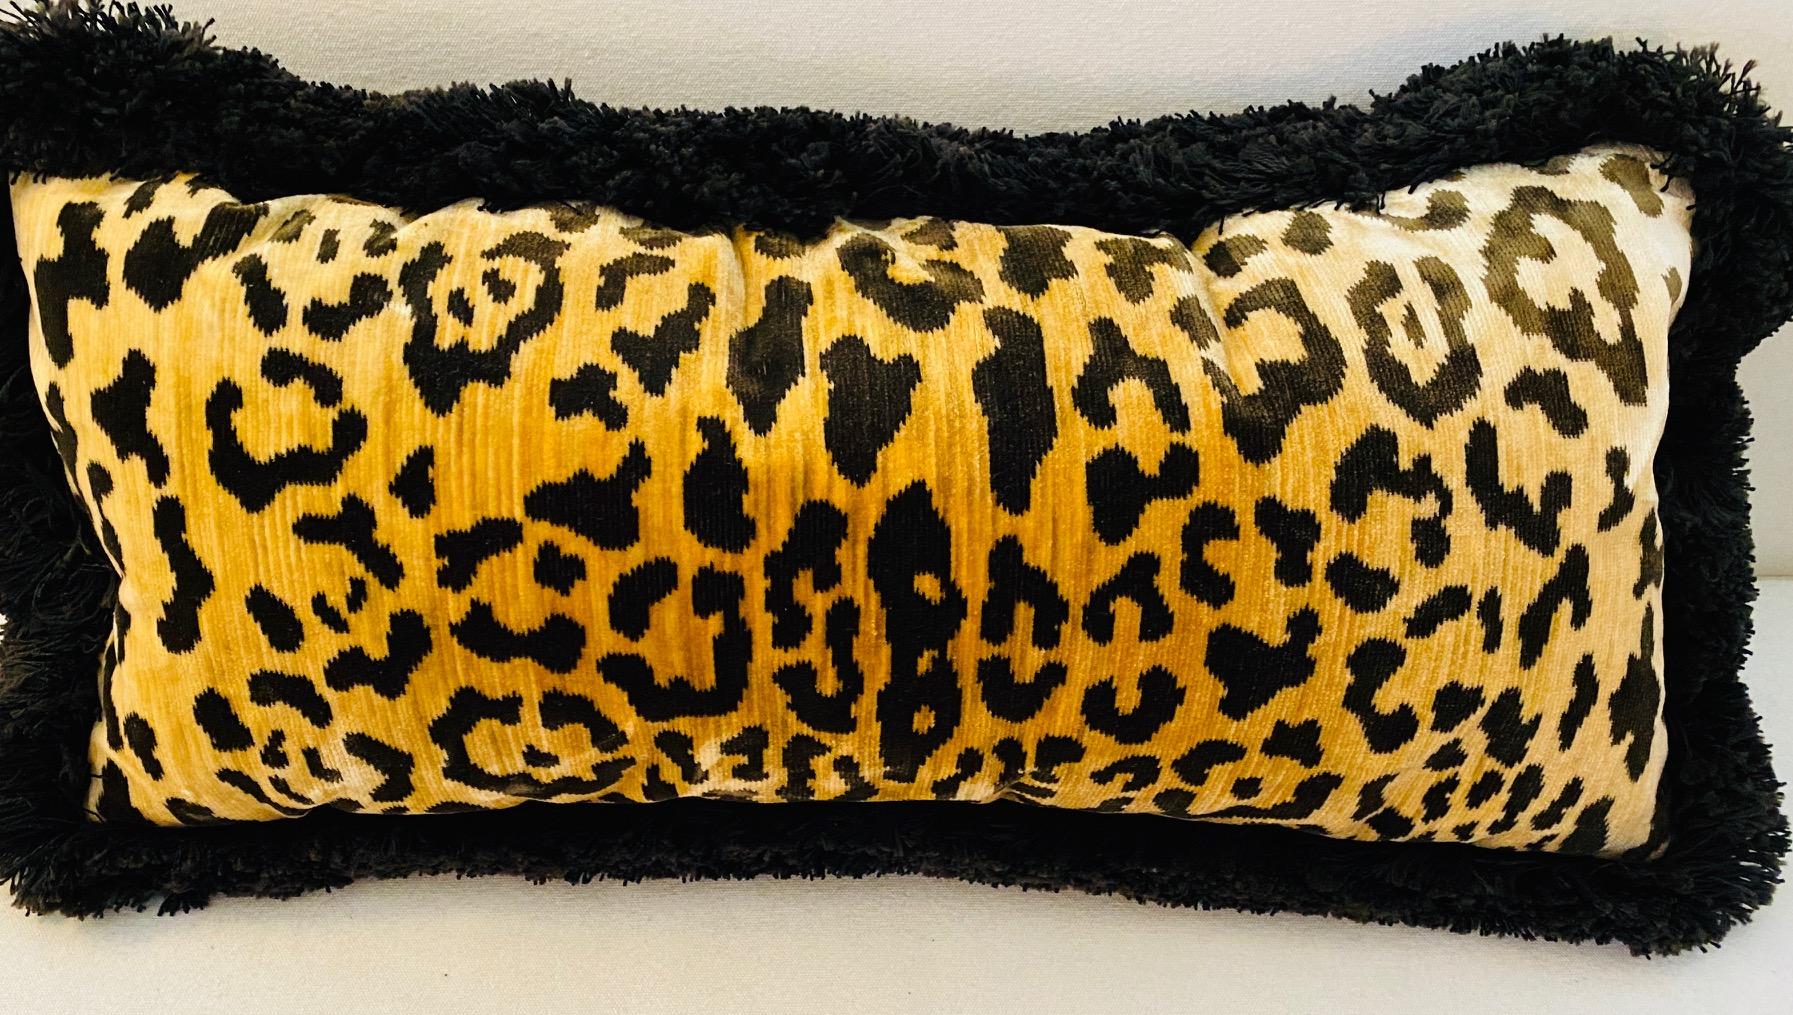 Dekoratives Paar Lendenkissen aus Leoparden-Samt mit schwarzen Bürstenfransen.
Maße: 22